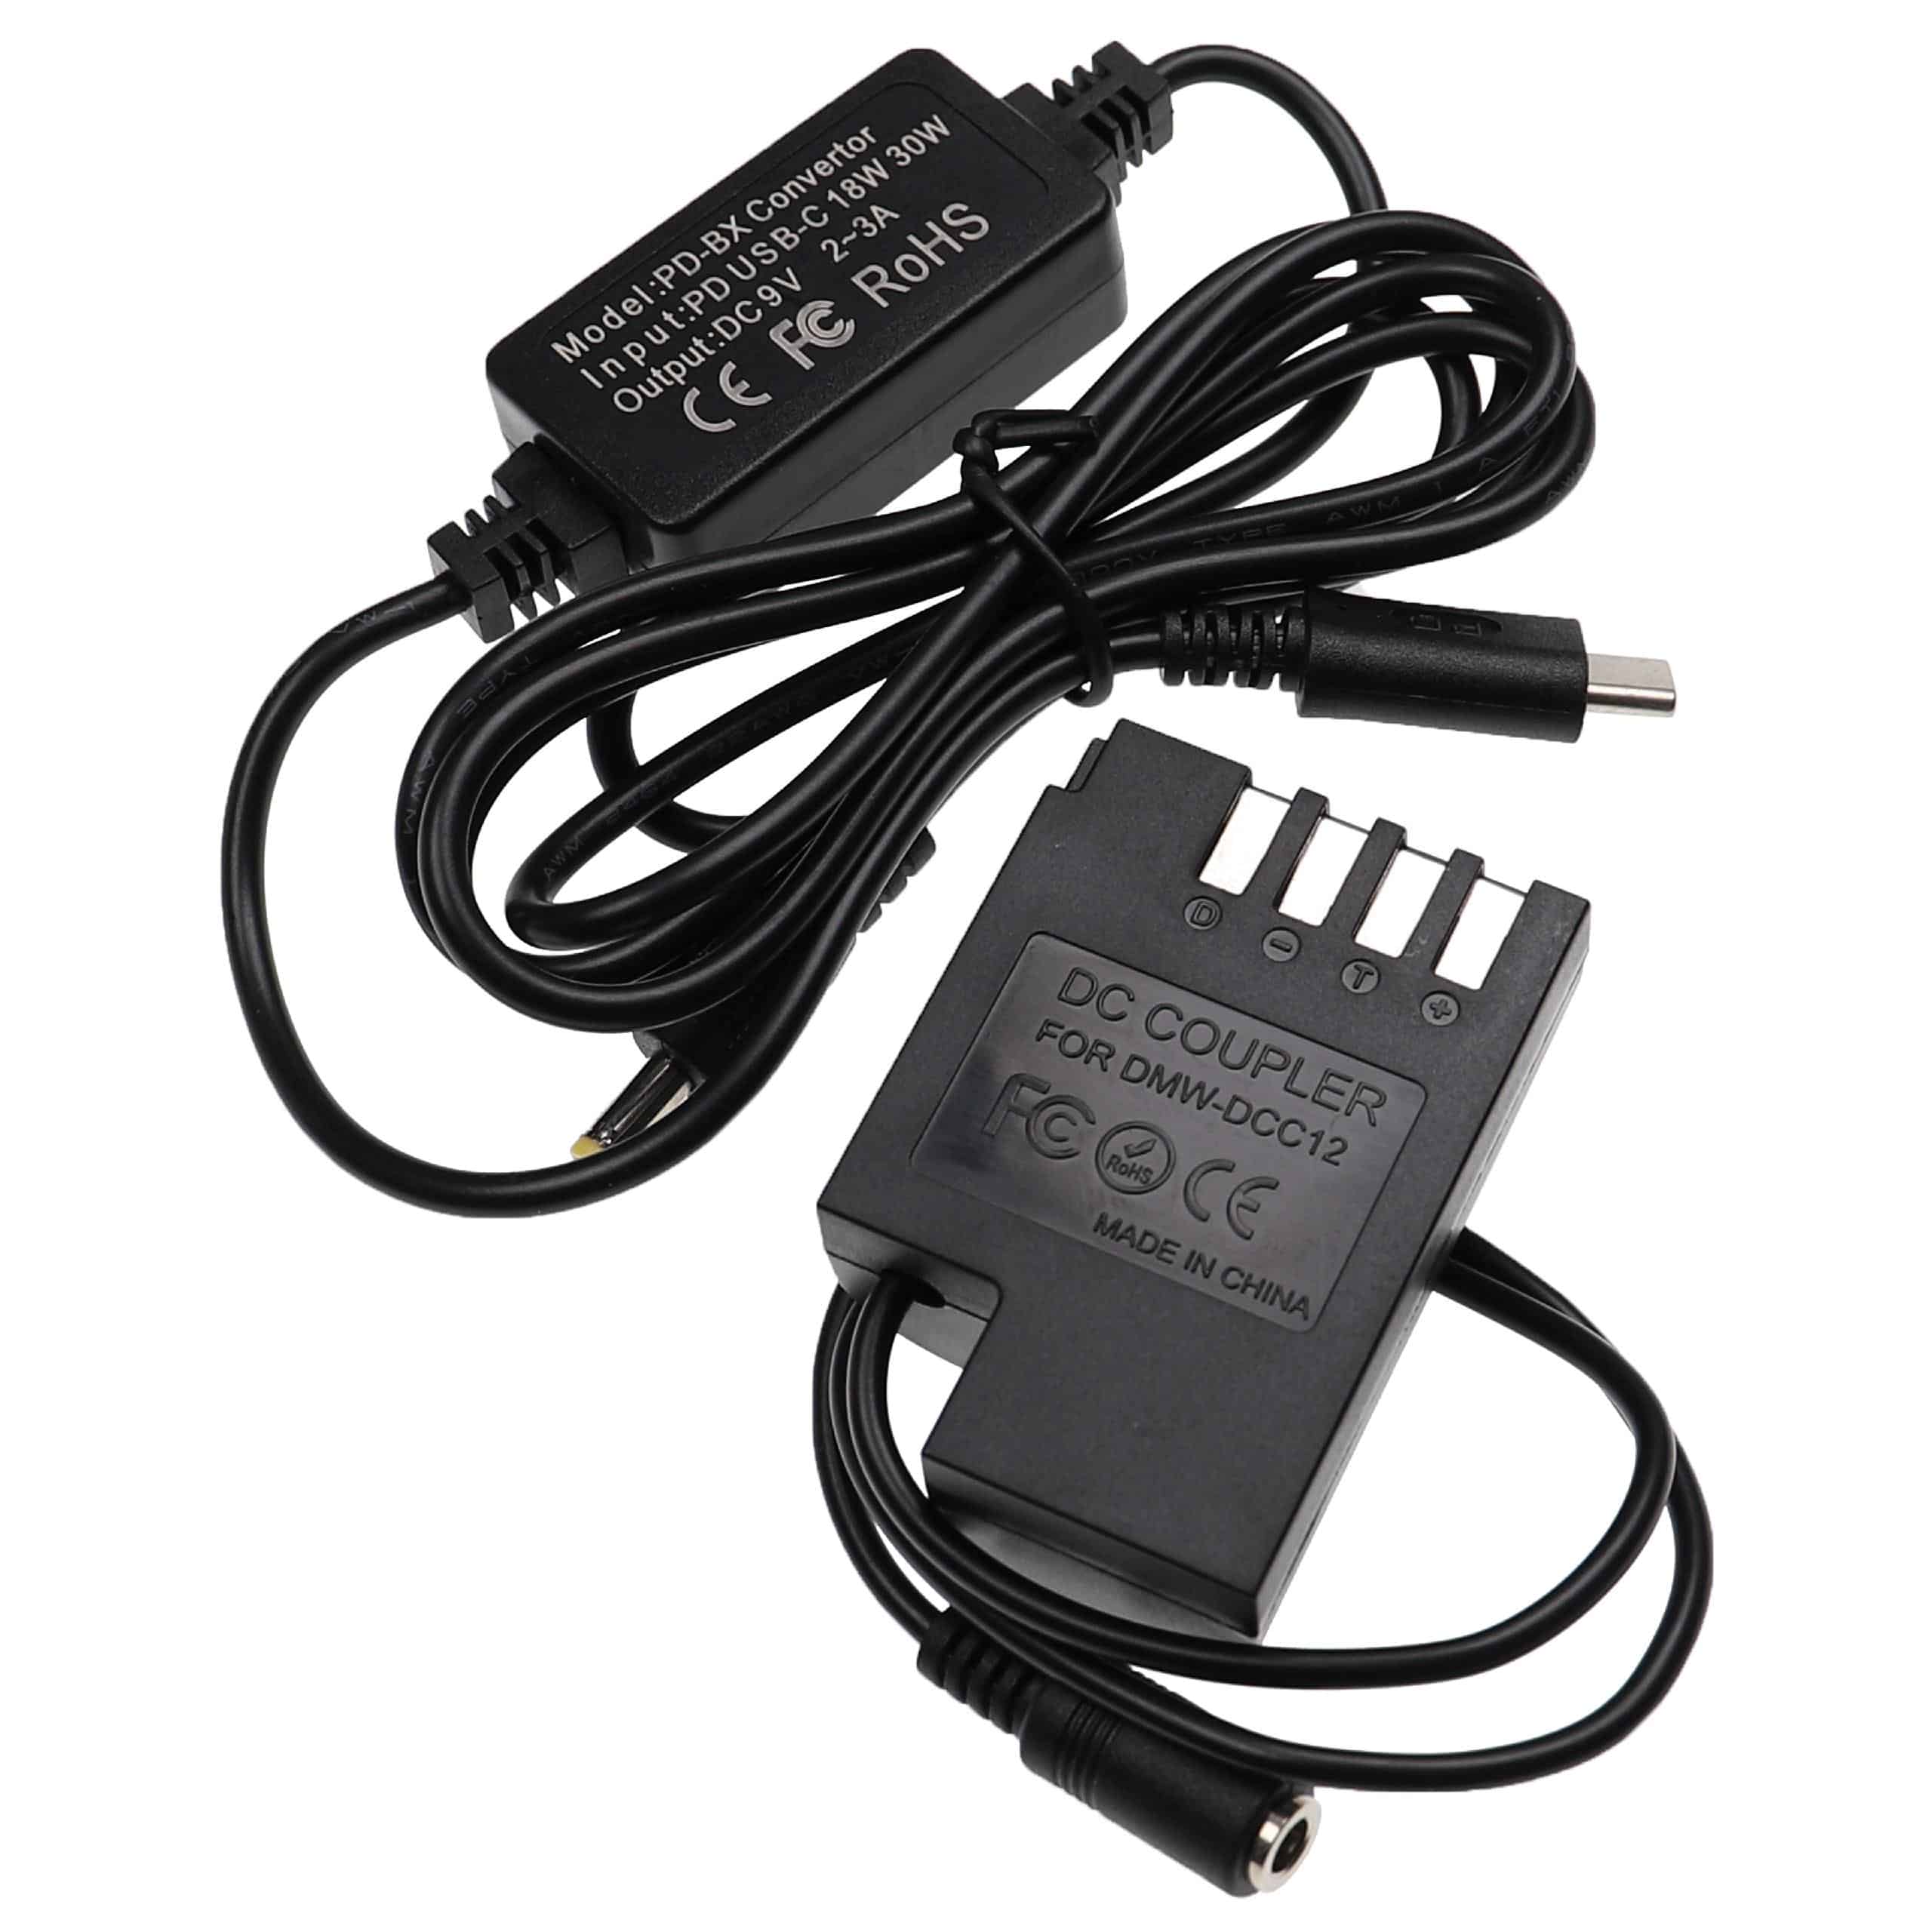 Zasilacz USB do aparatu zam. DMW-AC8 Panasonic + adapter zam. Panasonic DMW-DCC12 - 2 m, 9 V 3,0 A